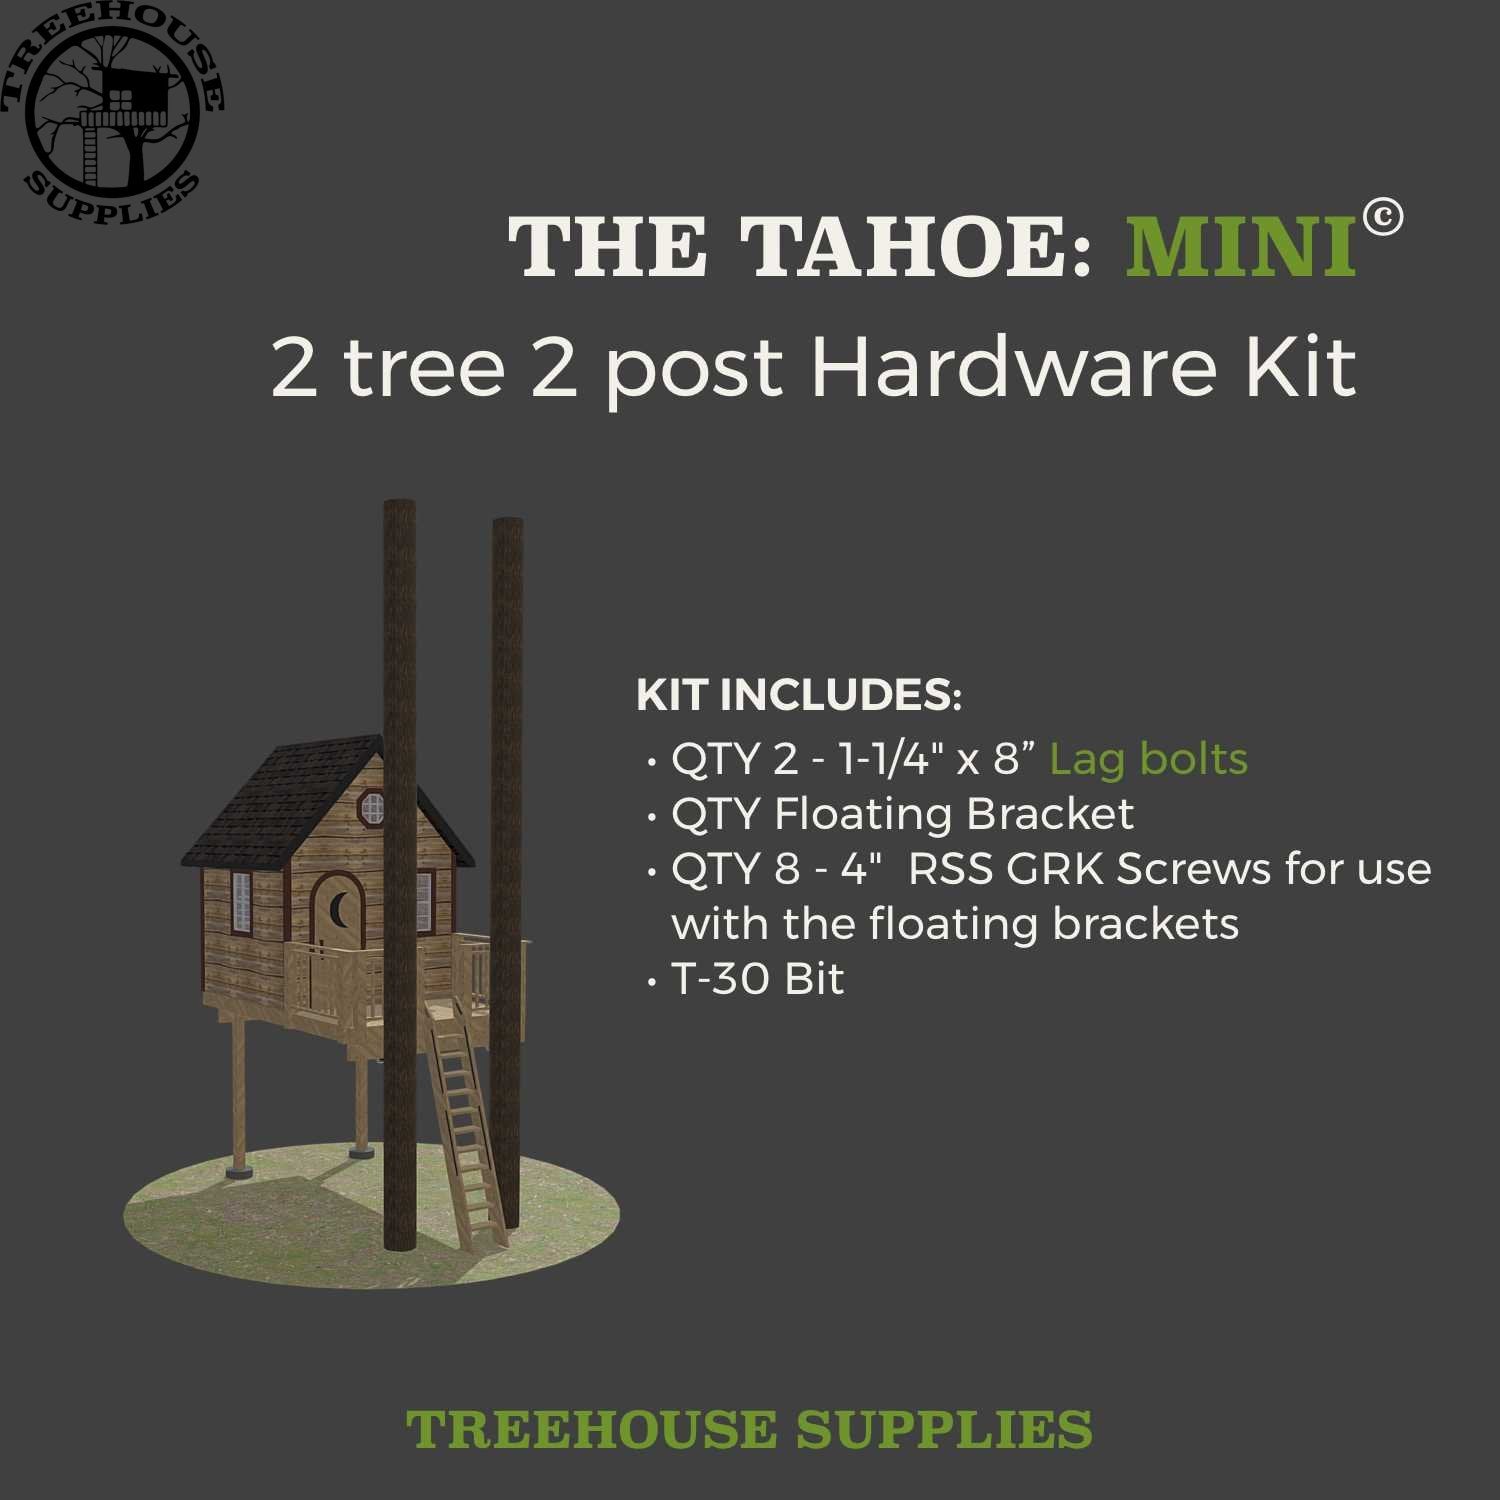 THE TAHOE: MINI © 2 tree 2 post hardware kit